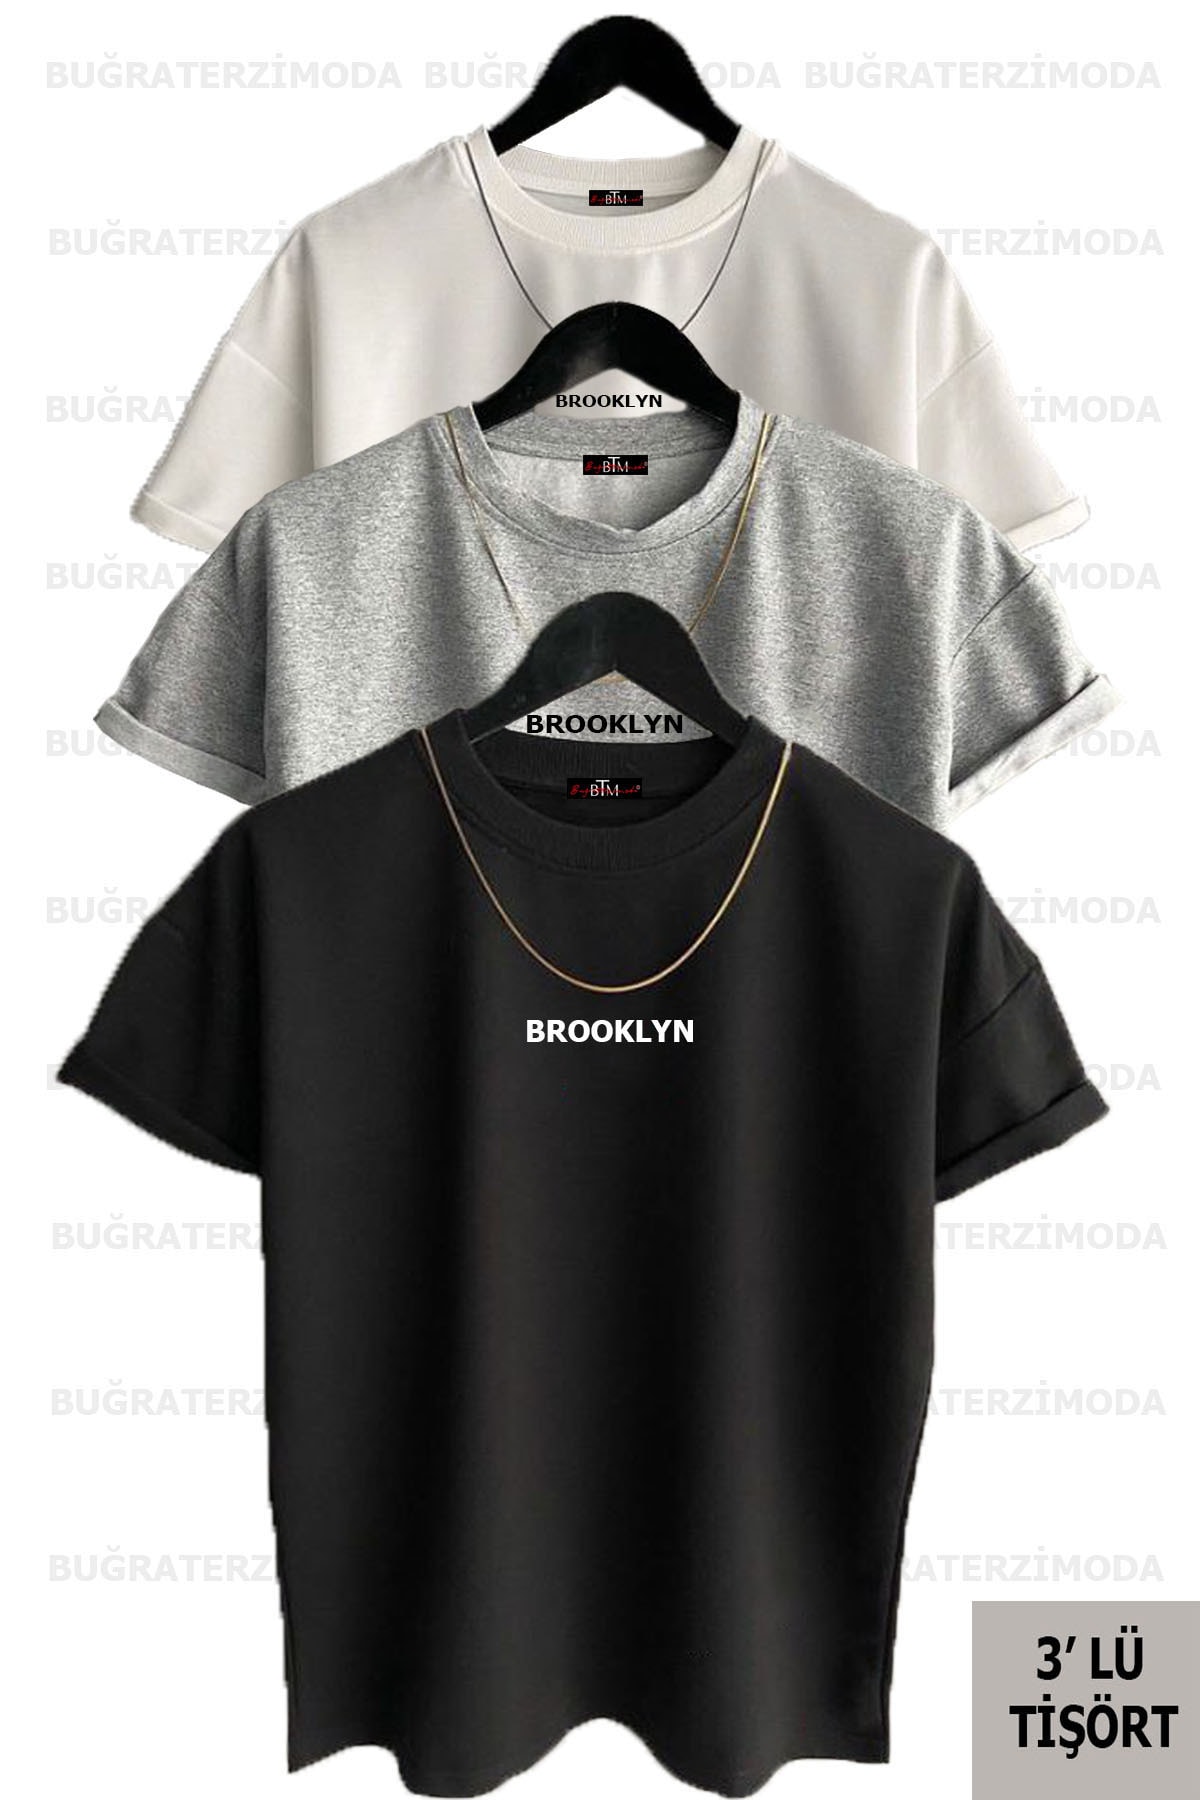 Buğraterzimoda Brooklyn Baskılı Unisex Siyah-beyaz-gri (bol Kalıp) Oversize 3'lü T-shirt Paketi